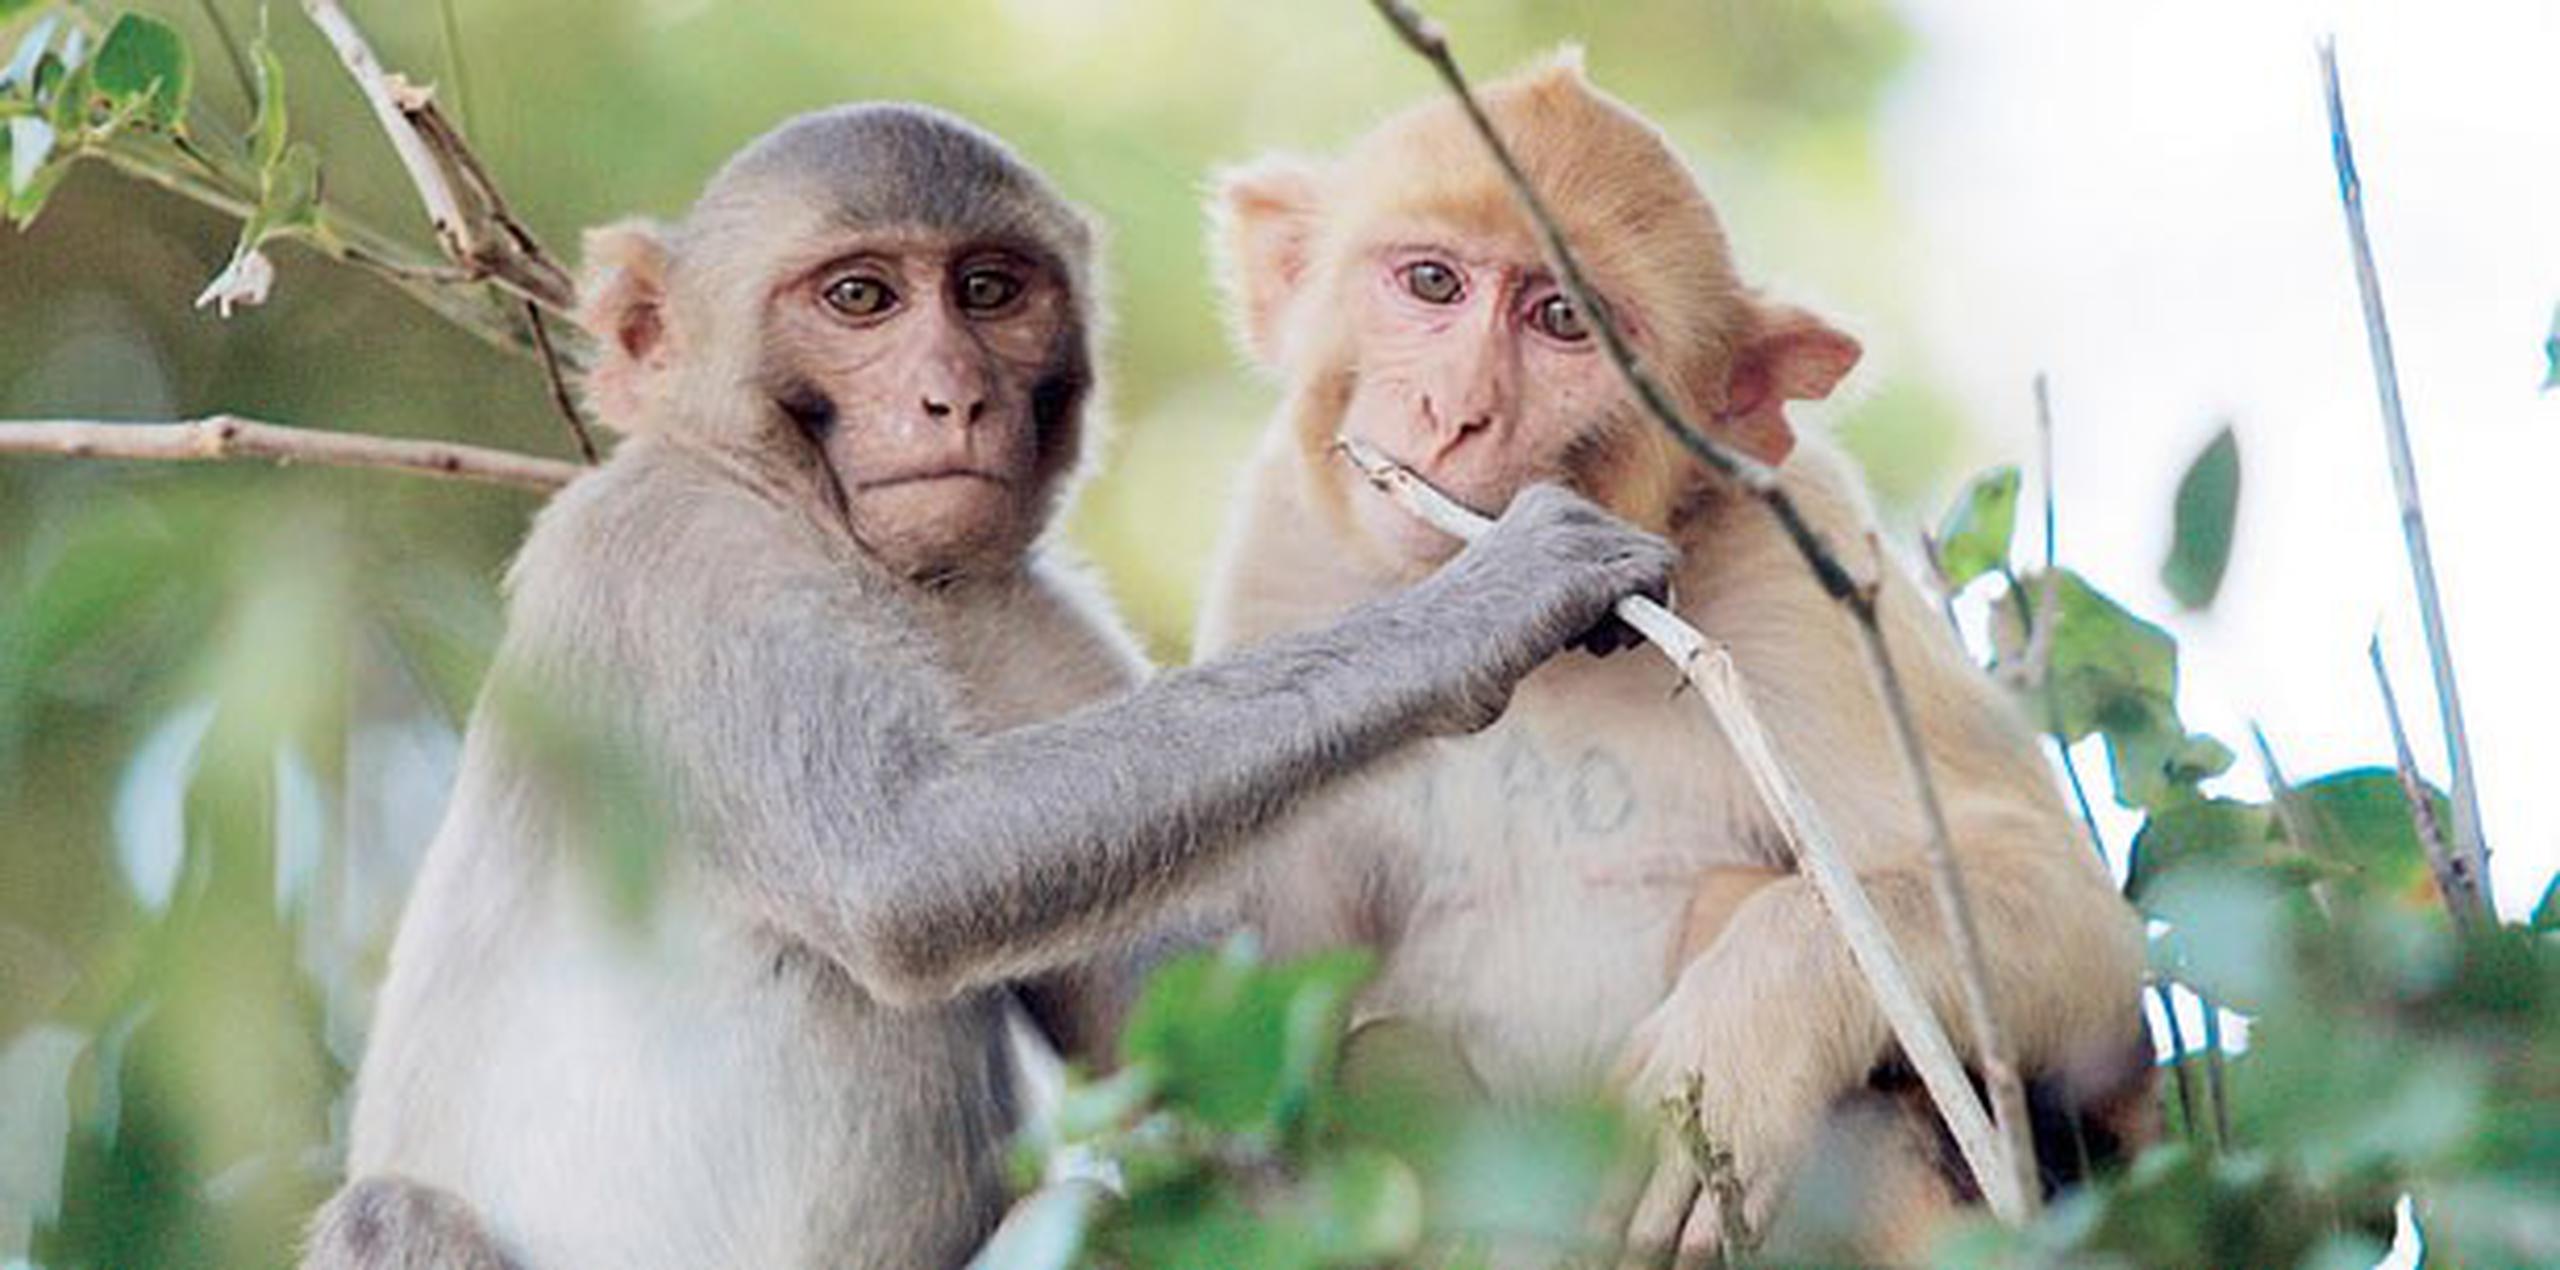 Según los expertos, una vez les dé hambre, los primates regresarían a su área habitual. (Archivo)